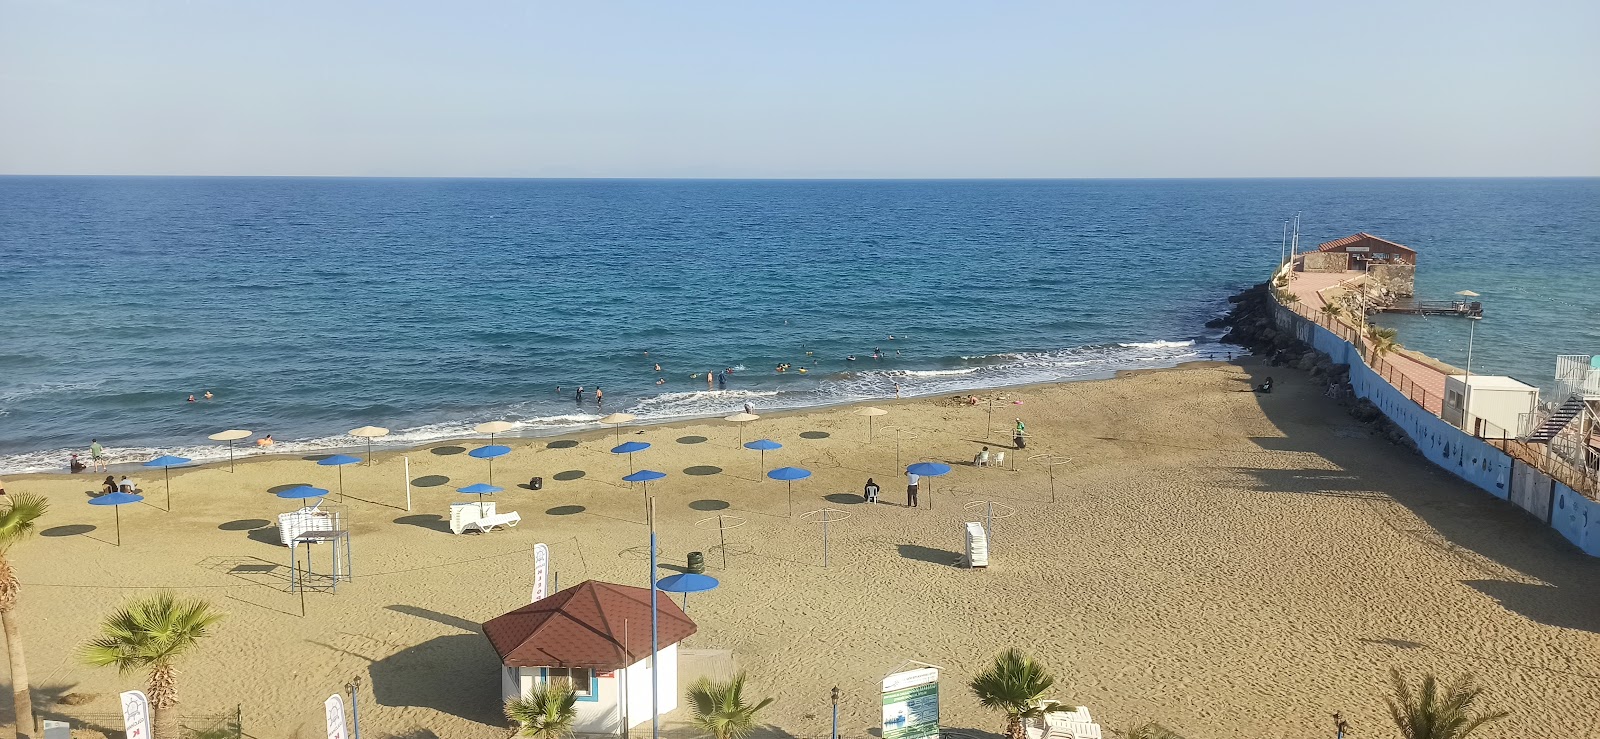 Photo de Denizkizi beach avec petite baie